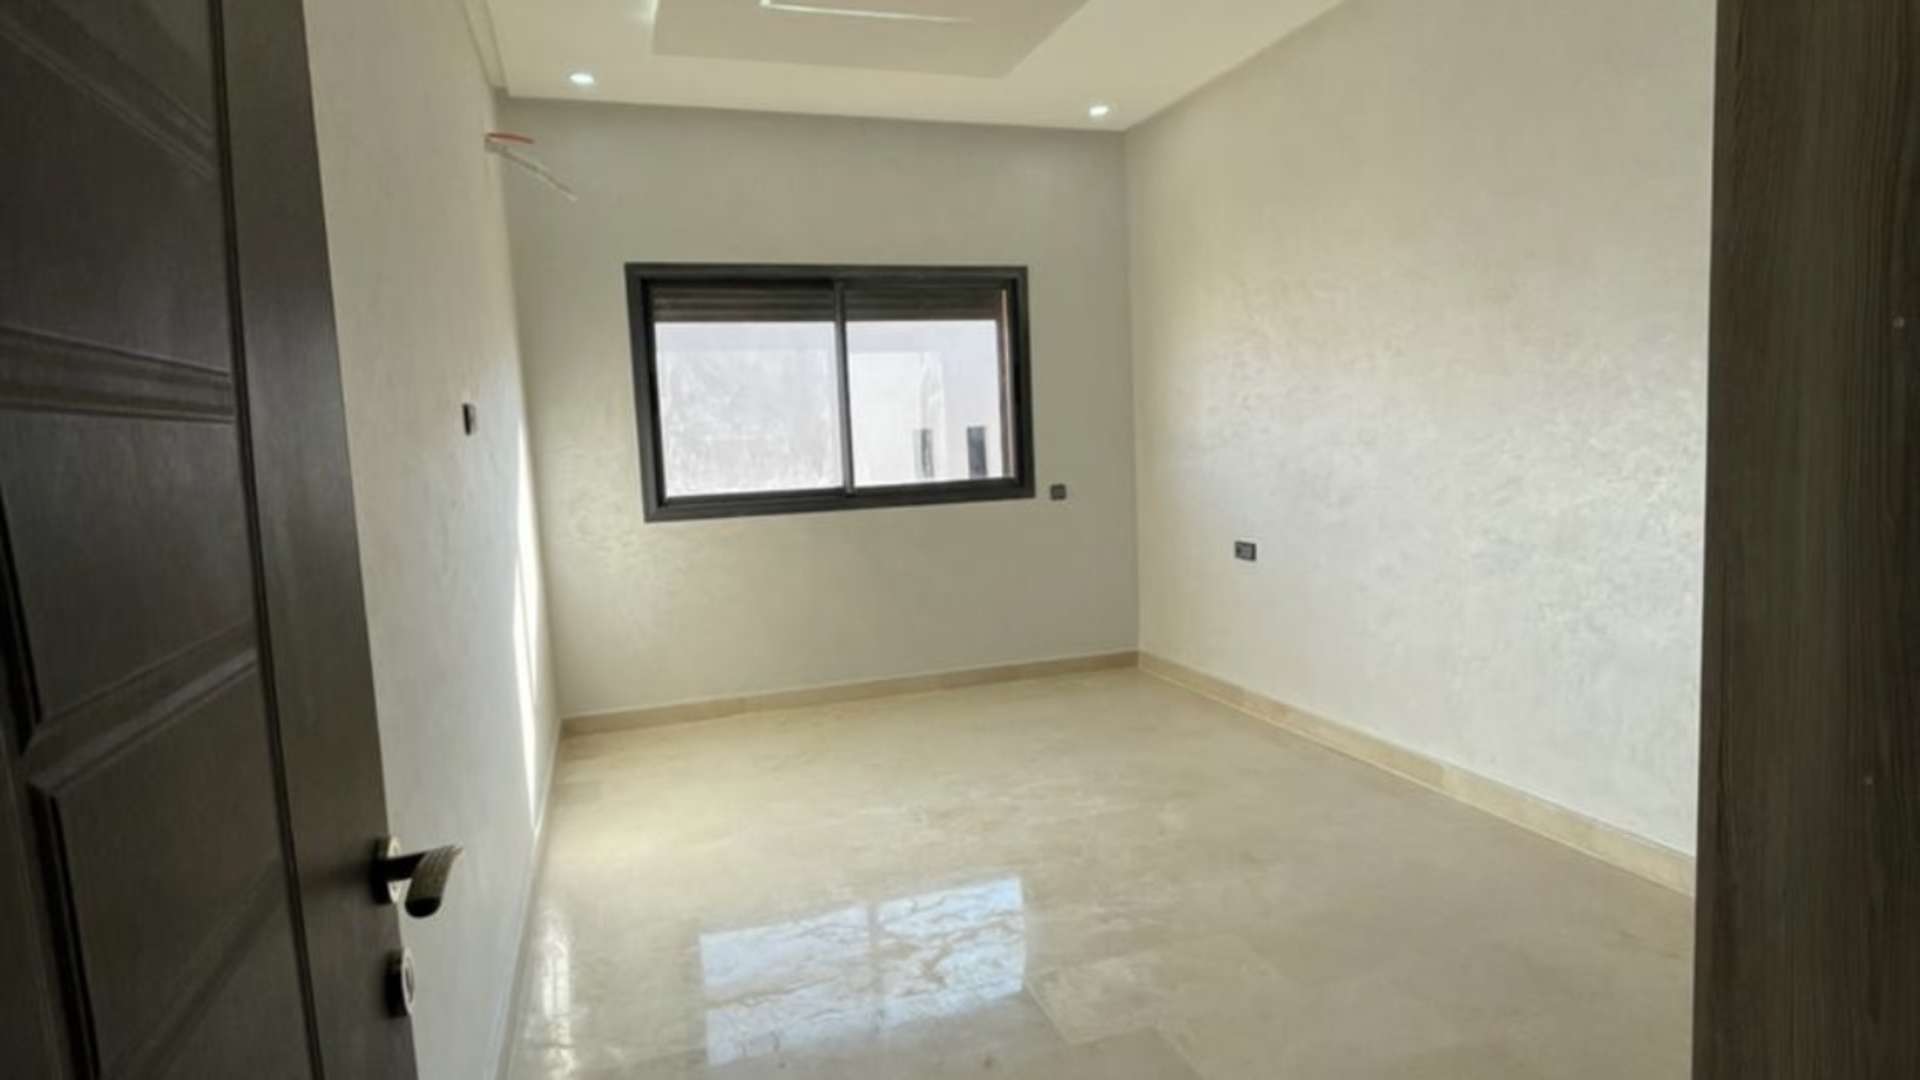 Location longue durée ,Appartement,Appartement 3ch salon neuf et vide en location longue durée à Targa Marrakech,Marrakech,Targa